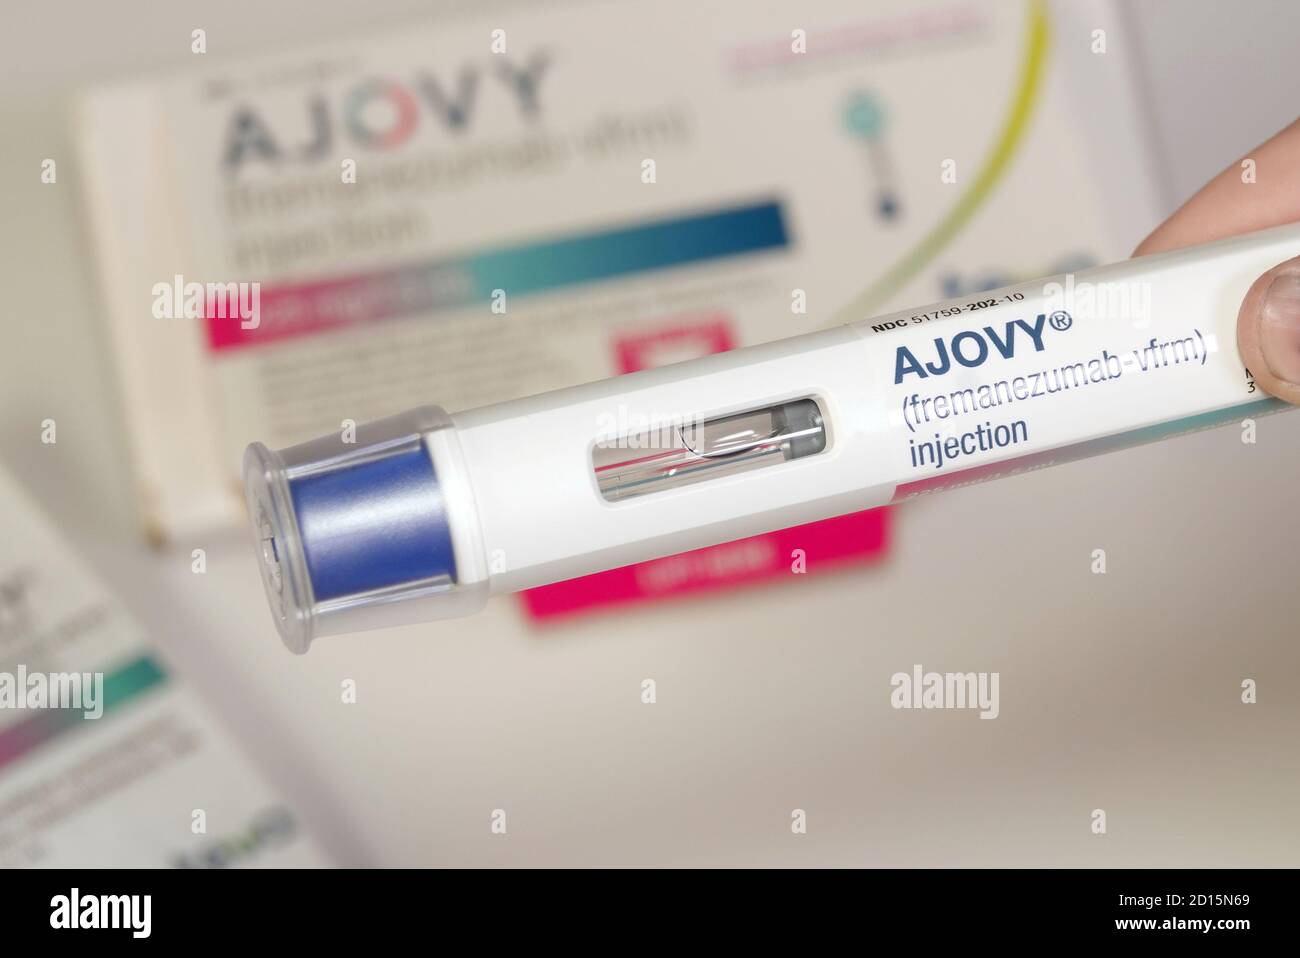 Ajovy, l'un des quatre nouveaux médicaments antimigraineux approuvés par la FDA. Gros plan de l'injecteur automatique maintenu devant l'emballage du produit. Banque D'Images